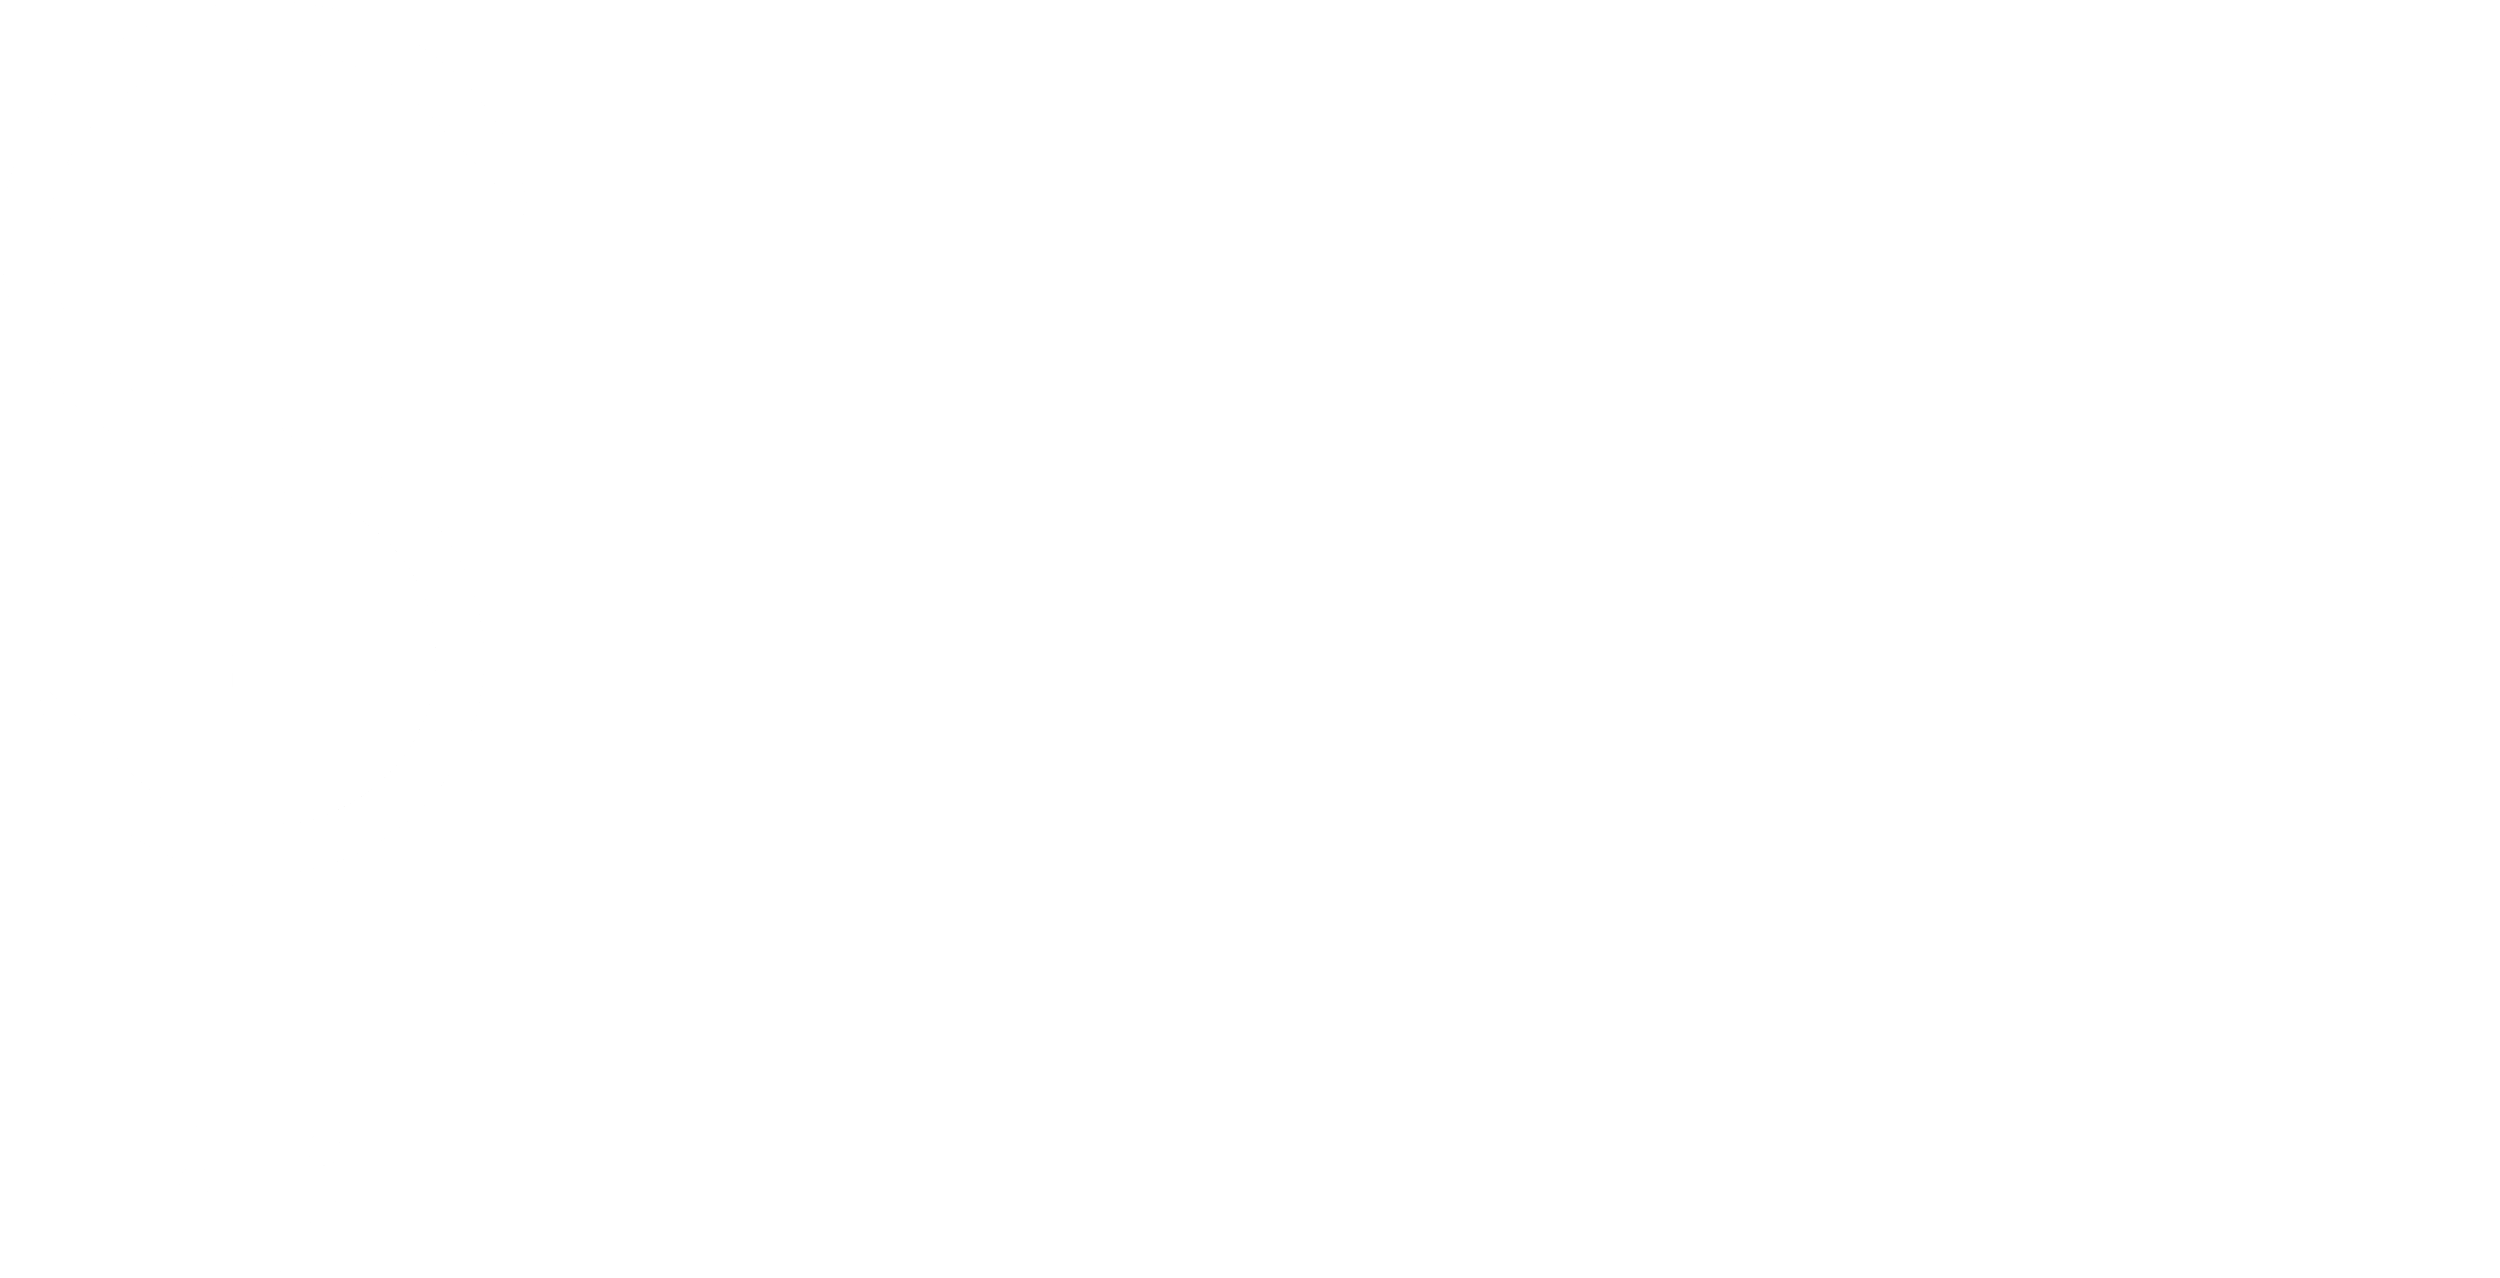 STEUART PINCOMBE